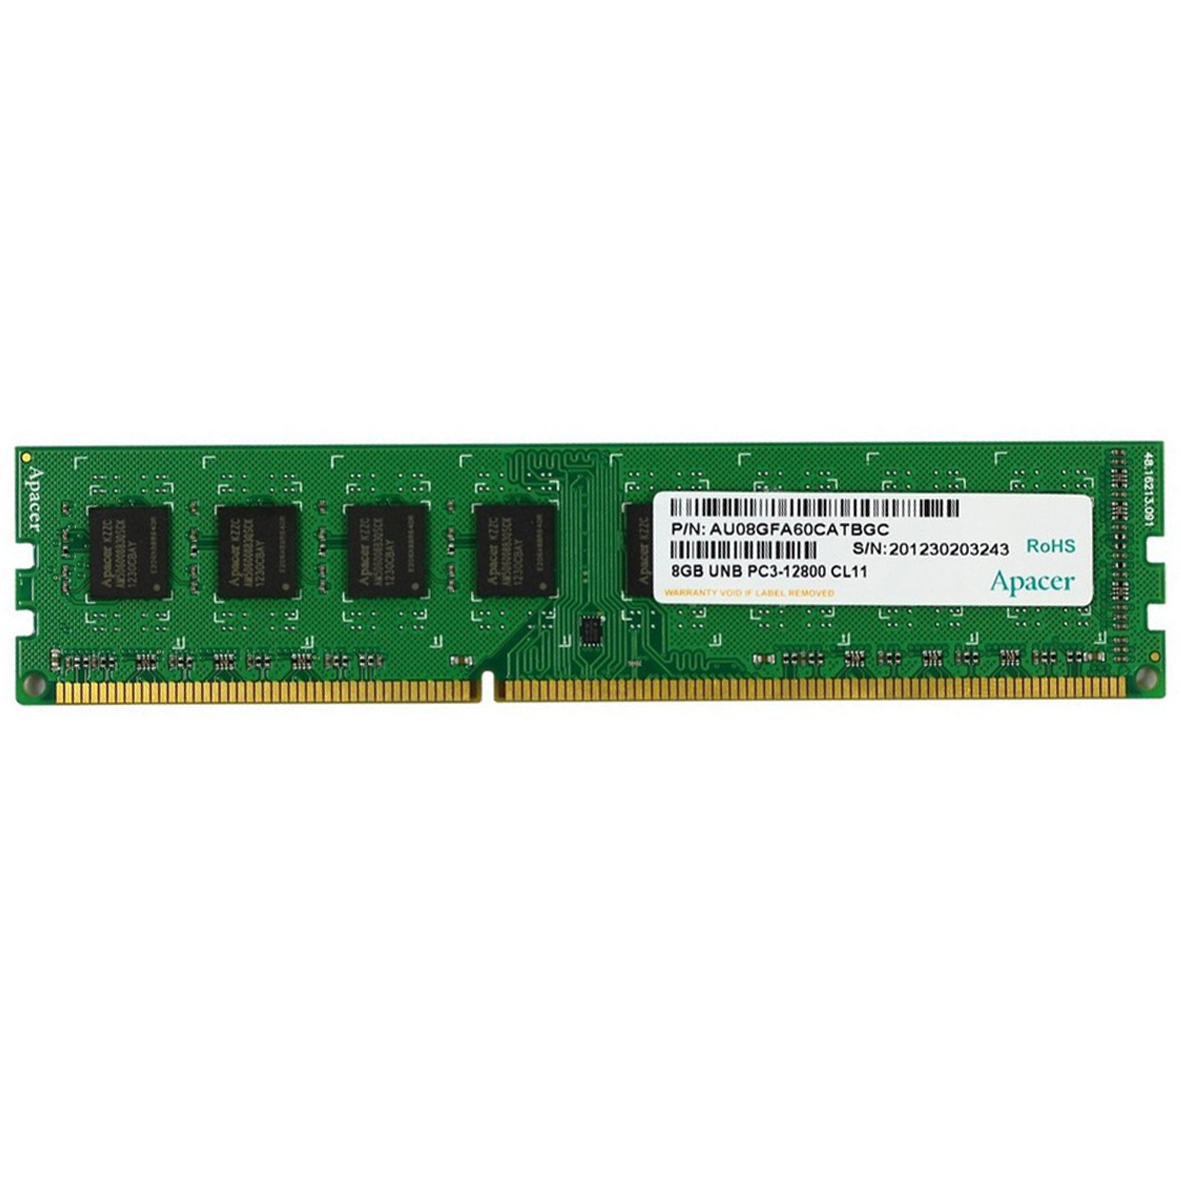 رم دسکتاپ DDR3 تک کاناله 1600 مگاهرتز CL11 اپیسر مدل AU08GFA60CATBGC ظرفیت 8 گیگابایت